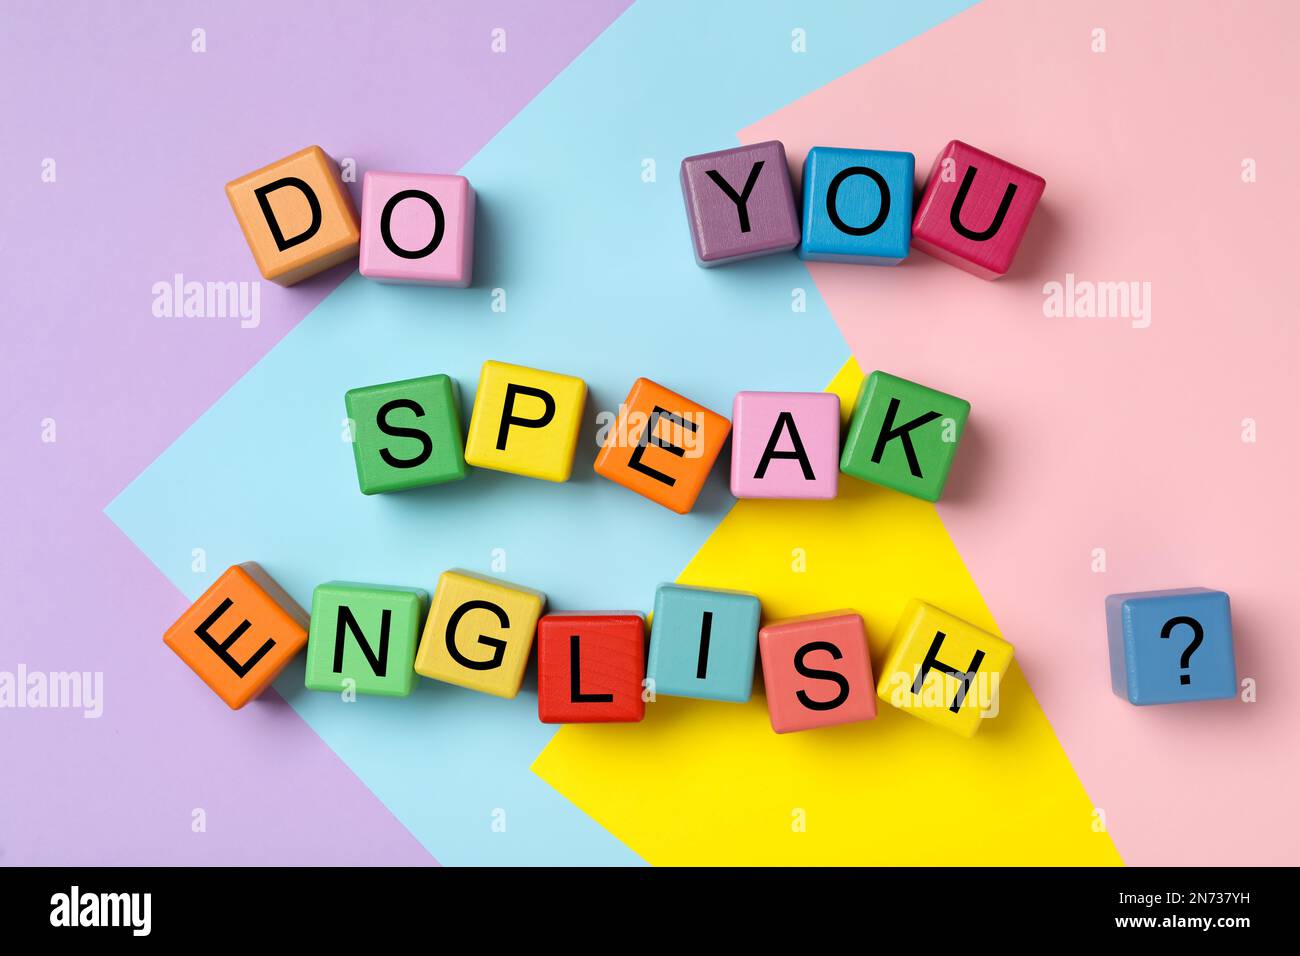 Würfel mit Frage sprichst du Englisch auf farbigem Hintergrund, flach  liegend Stockfotografie - Alamy